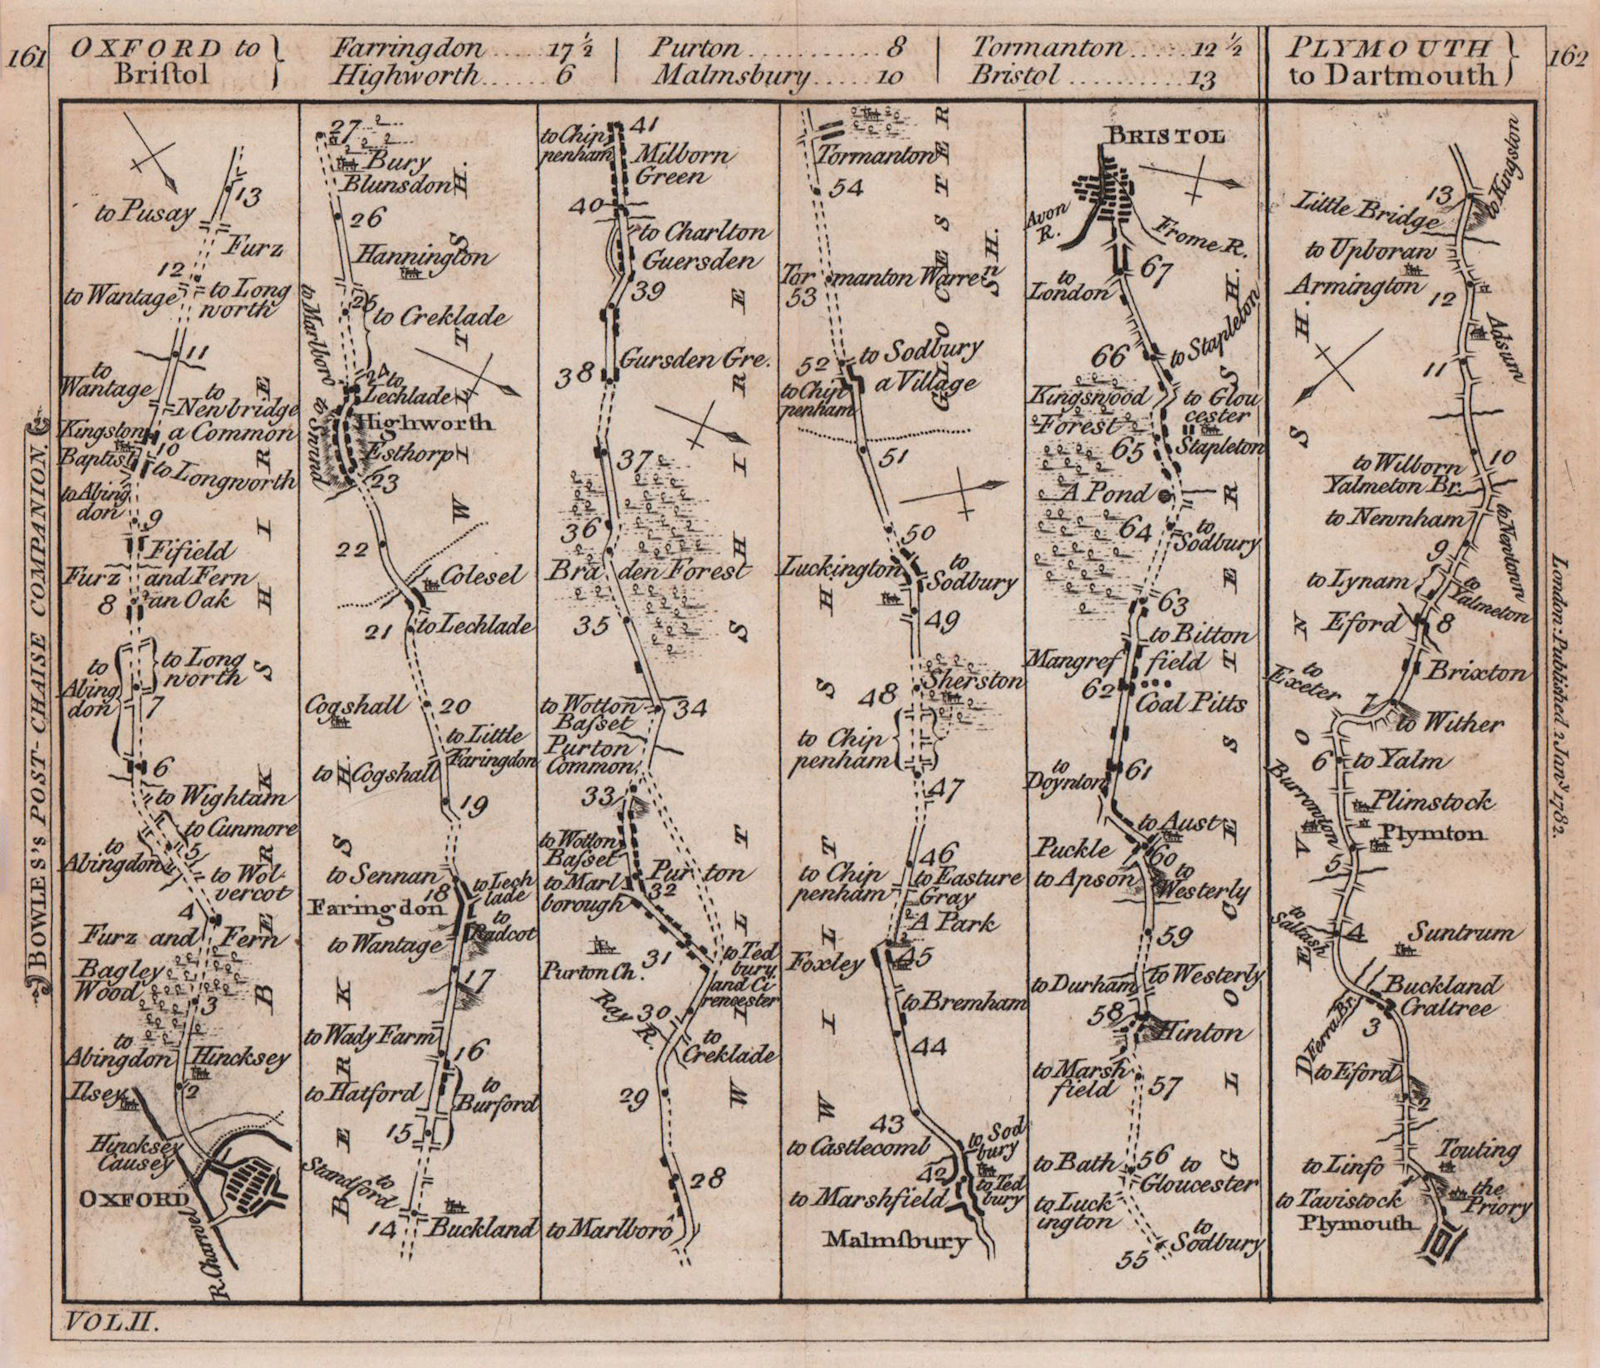 Oxford-Faringdon-Bristol. Plymouth-Yealmbridge road strip map. BOWLES 1782